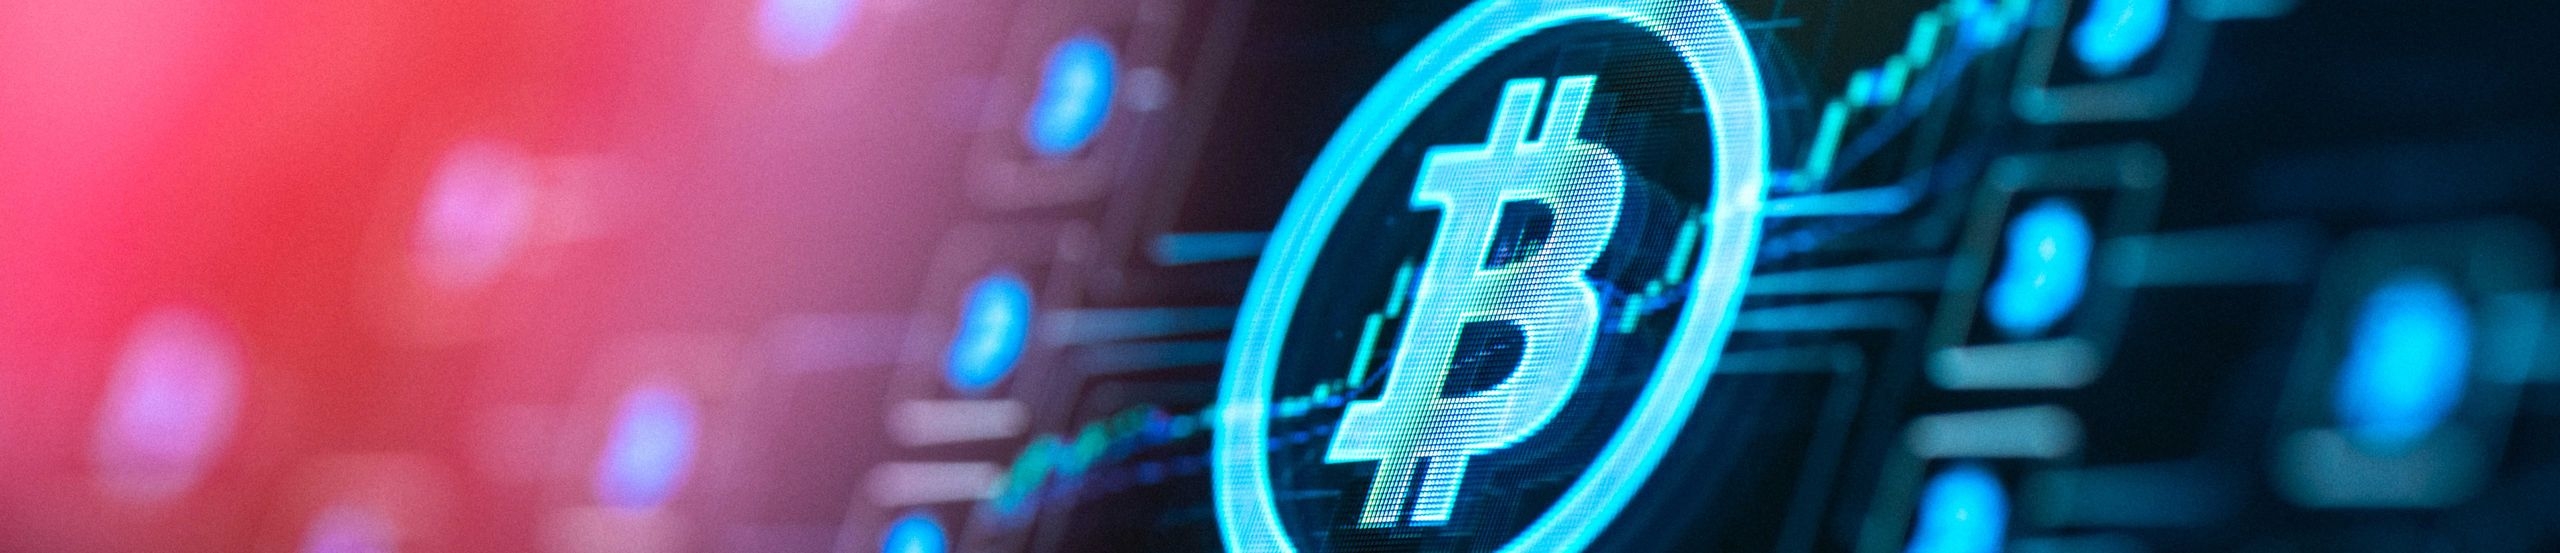 Symbolbild mit einer Blockchain und einem Bitcoin-Symbol